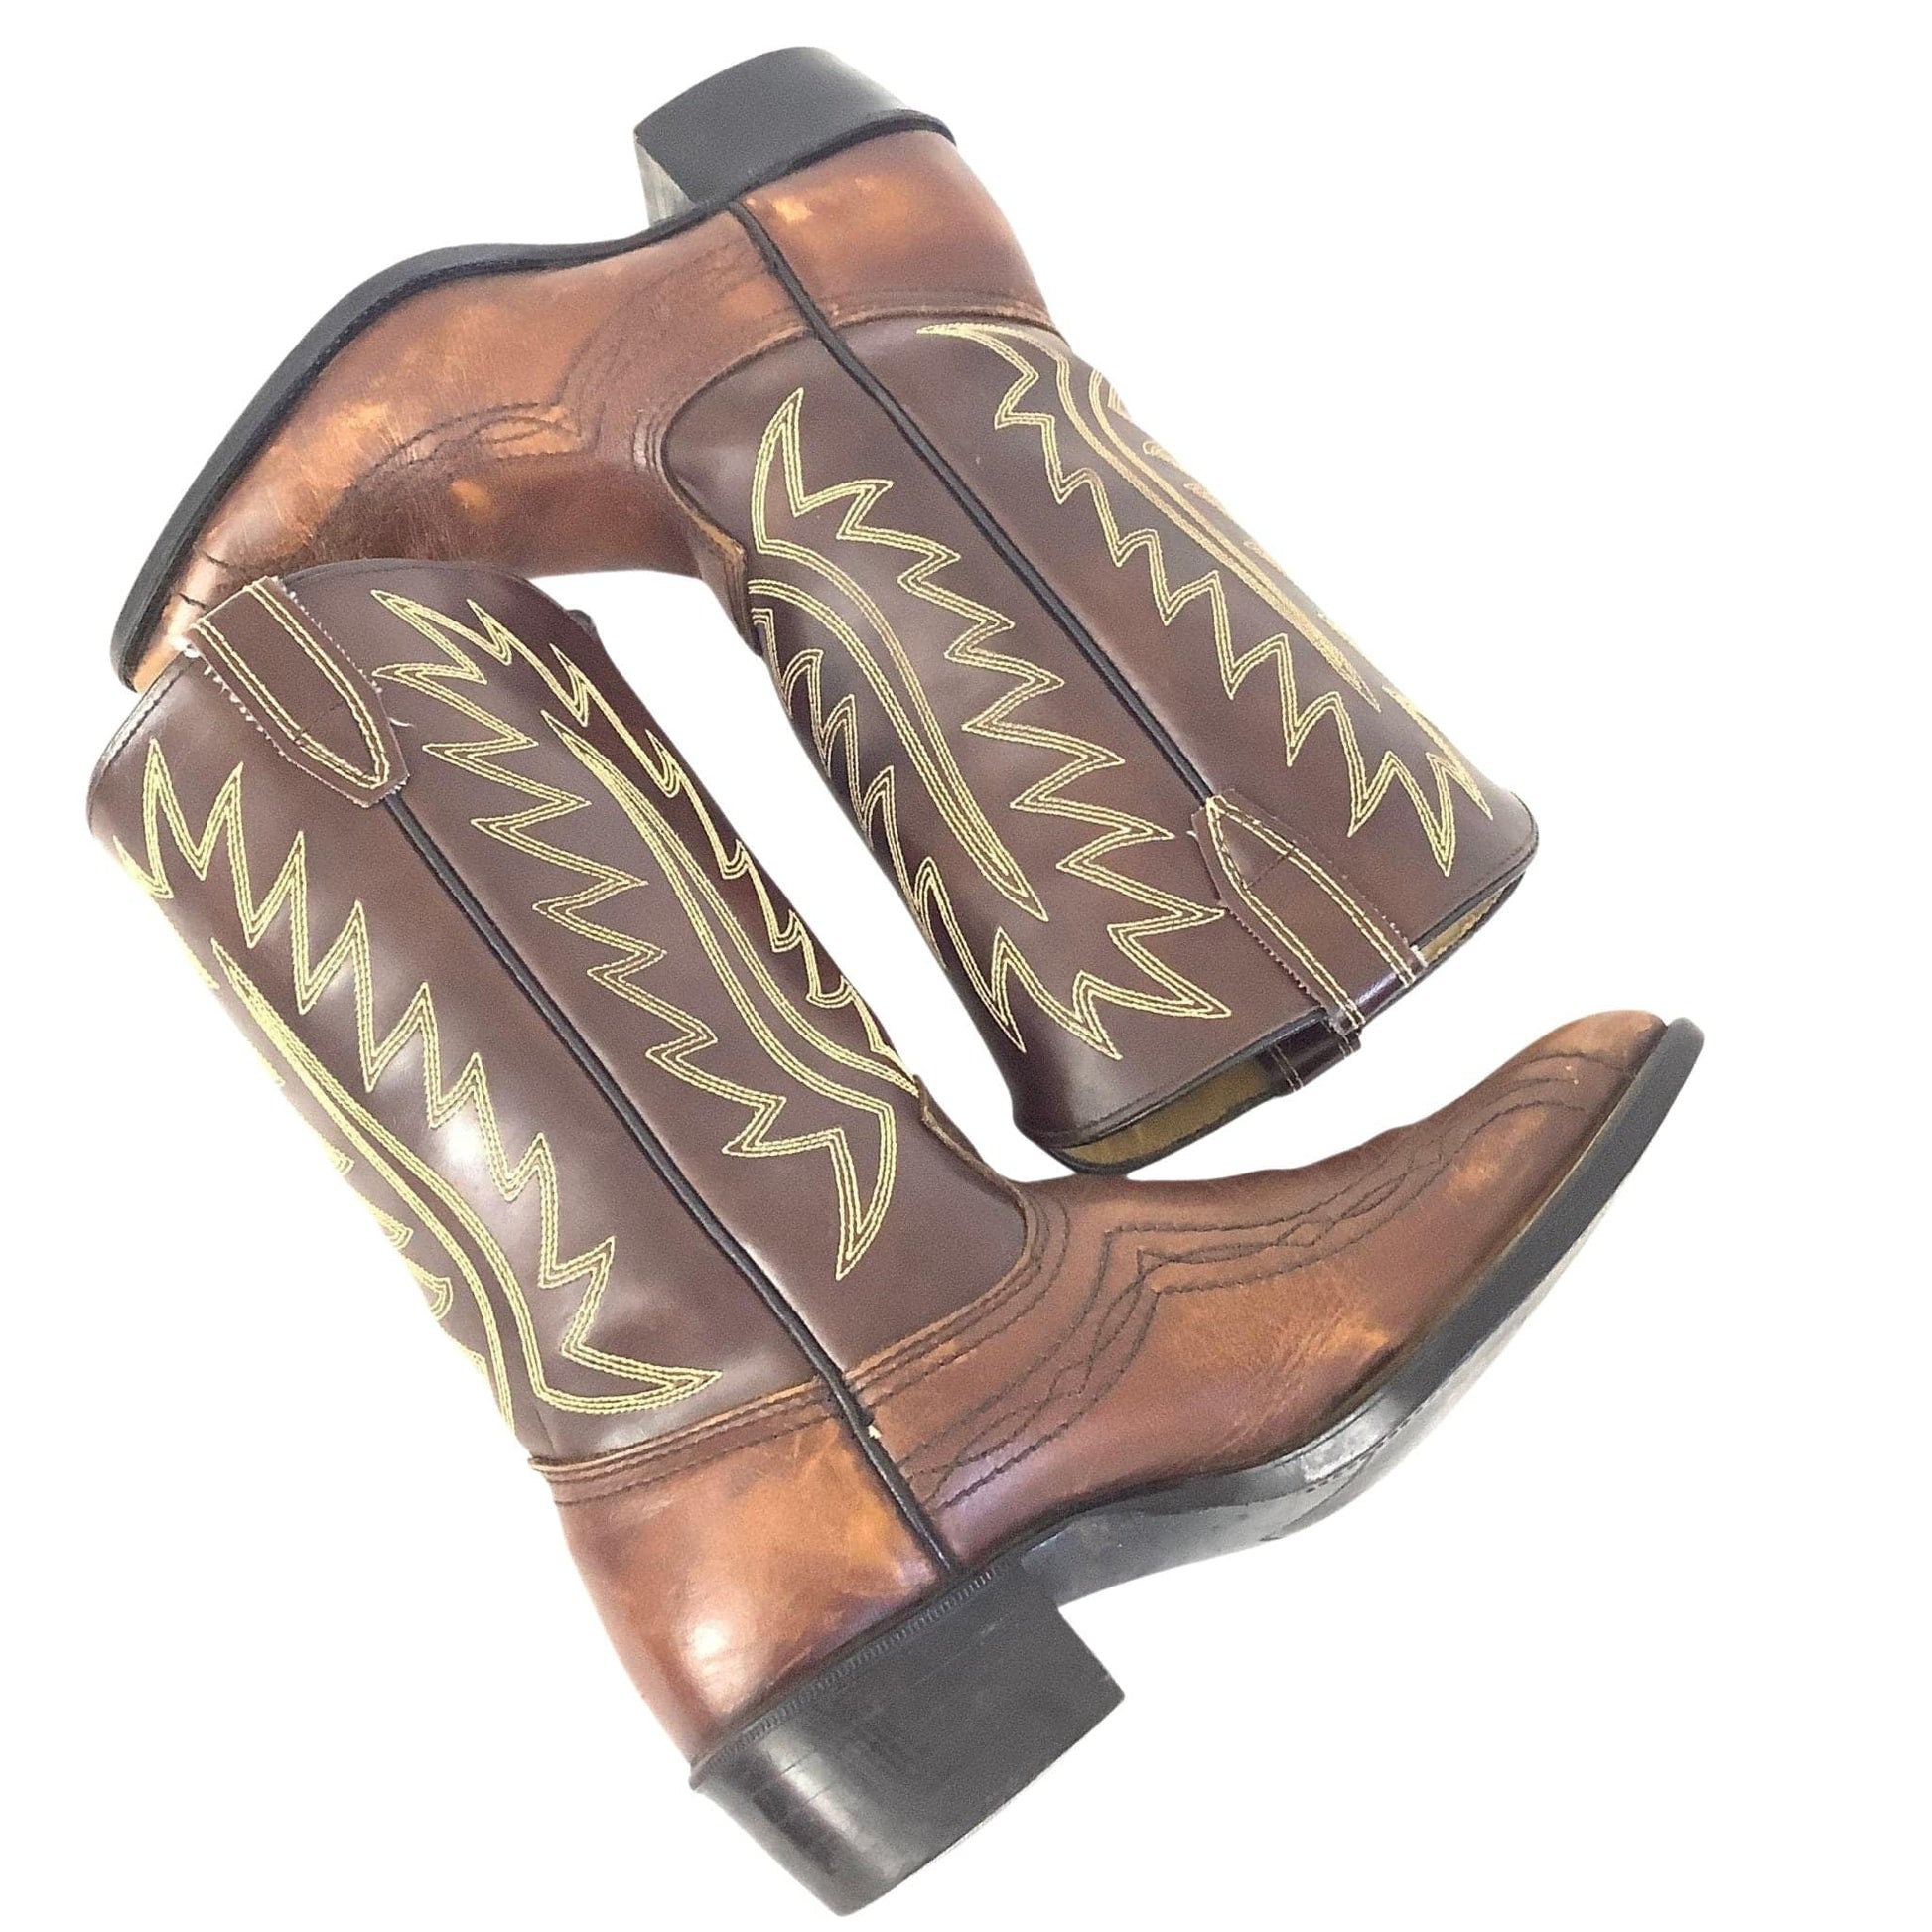 Vintage Acme Western Boots 4.5 / Brown / Vintage 1960s